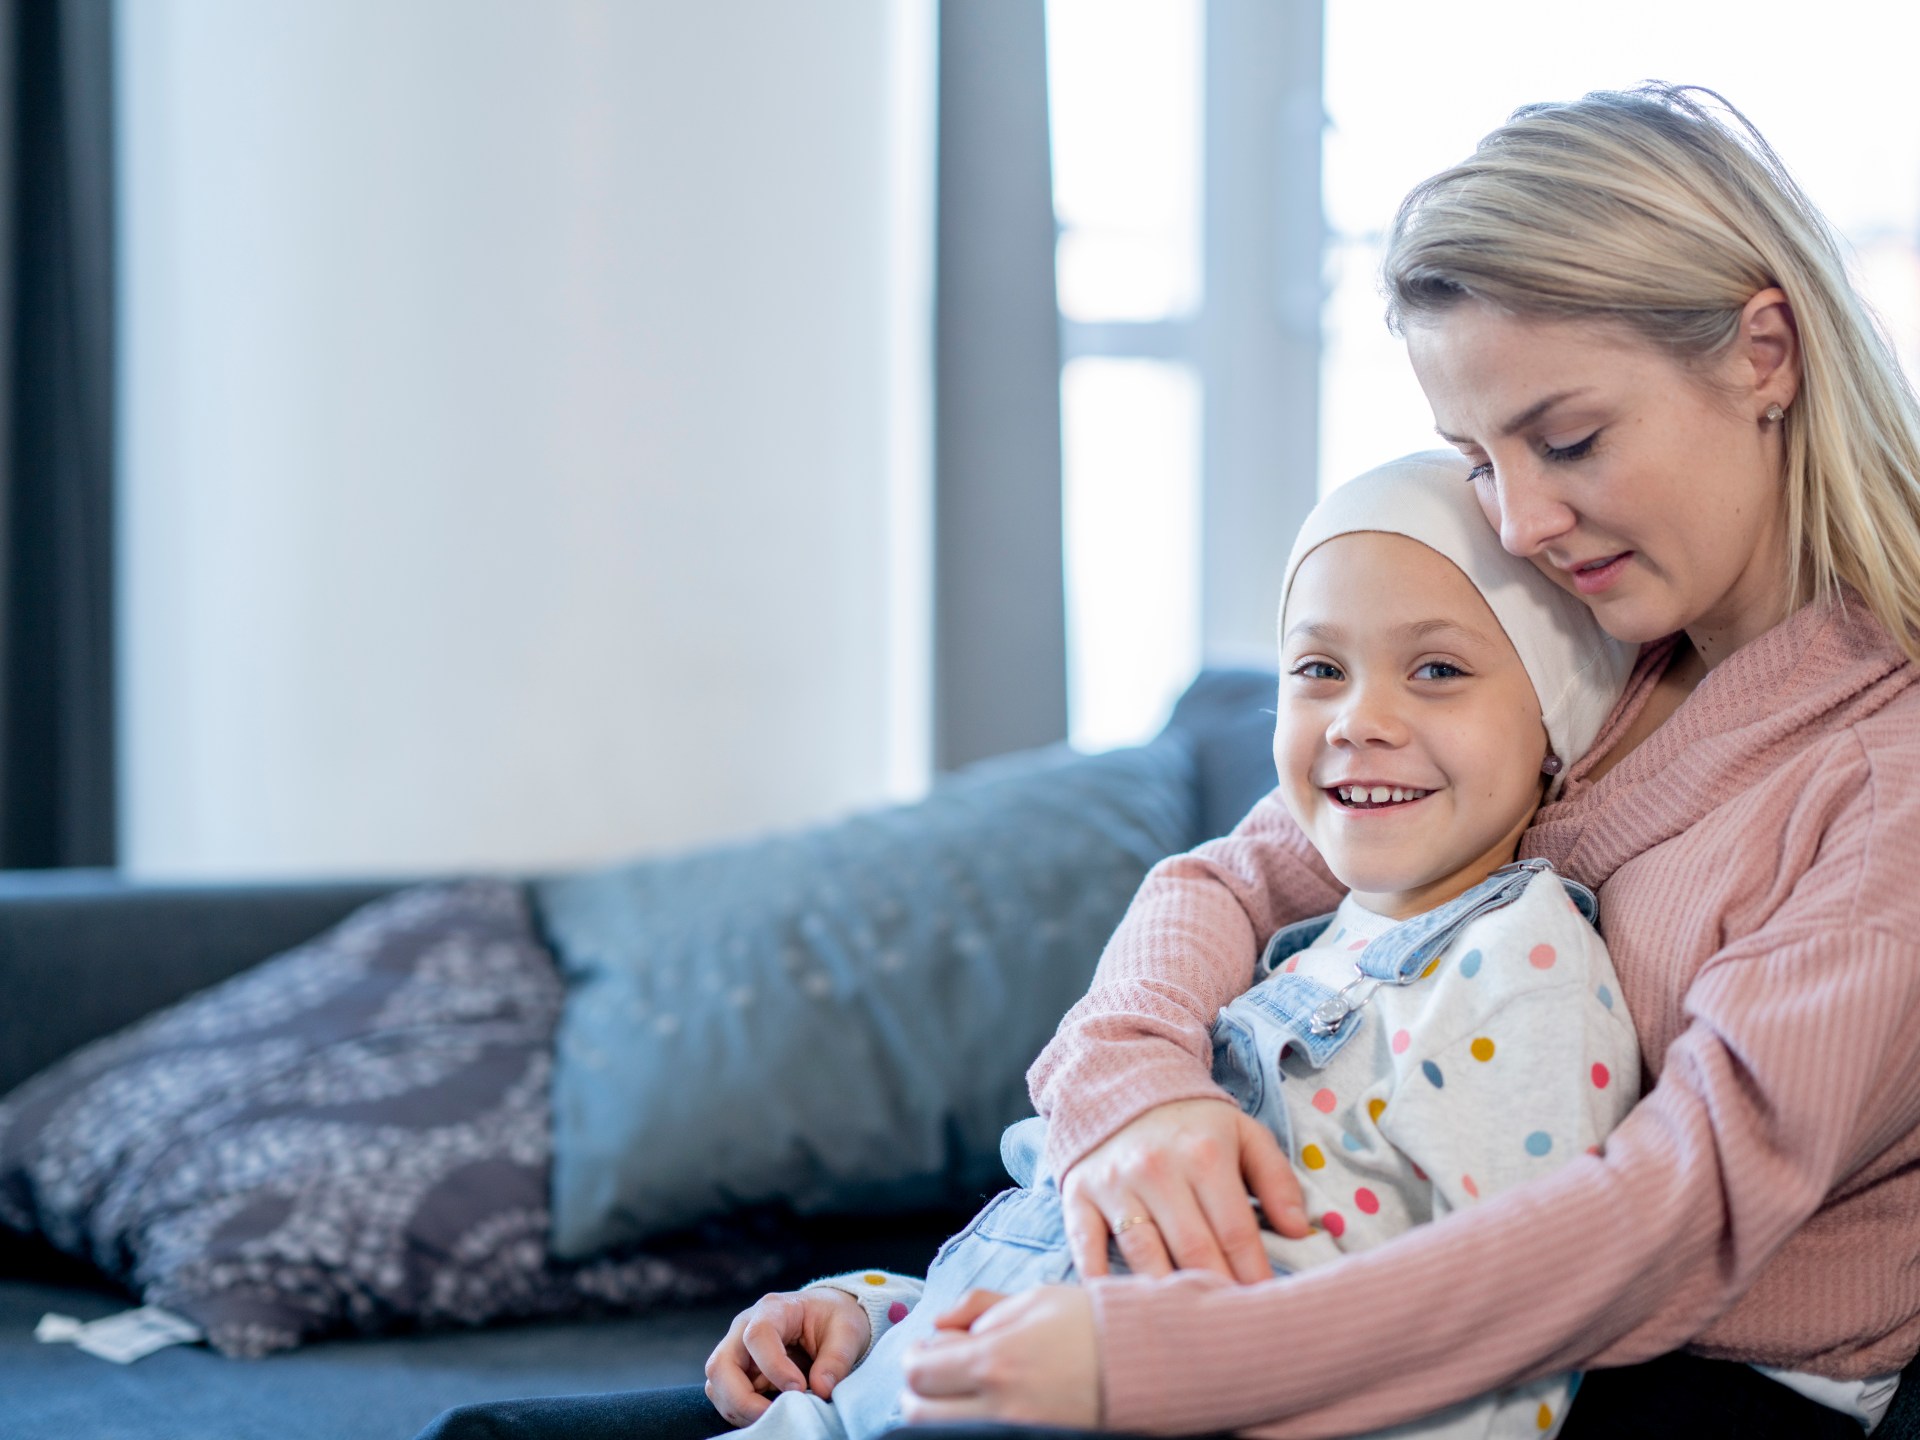 كيف يمكن للعائلة تقديم الدعم النفسي للطفل المصاب السرطان؟ | مرأة – البوكس نيوز